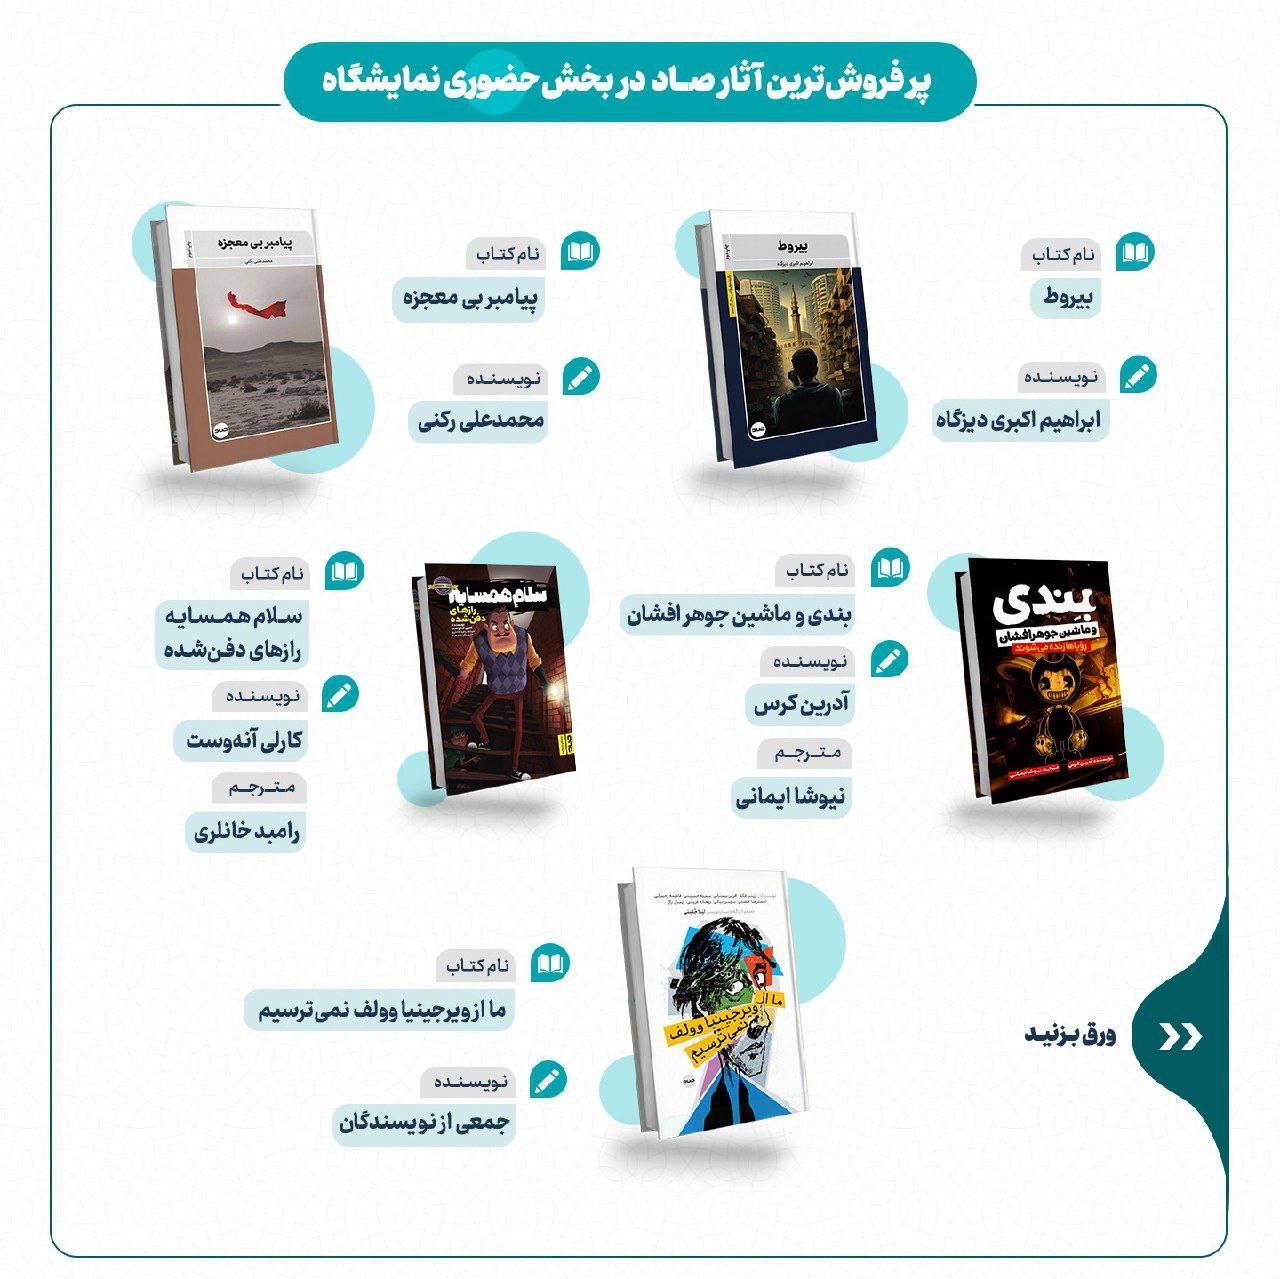 فروش ۹۰ میلیاردی ناشران خانواده سازمان تبلیغات اسلامی در نمایشگاه کتاب تهران